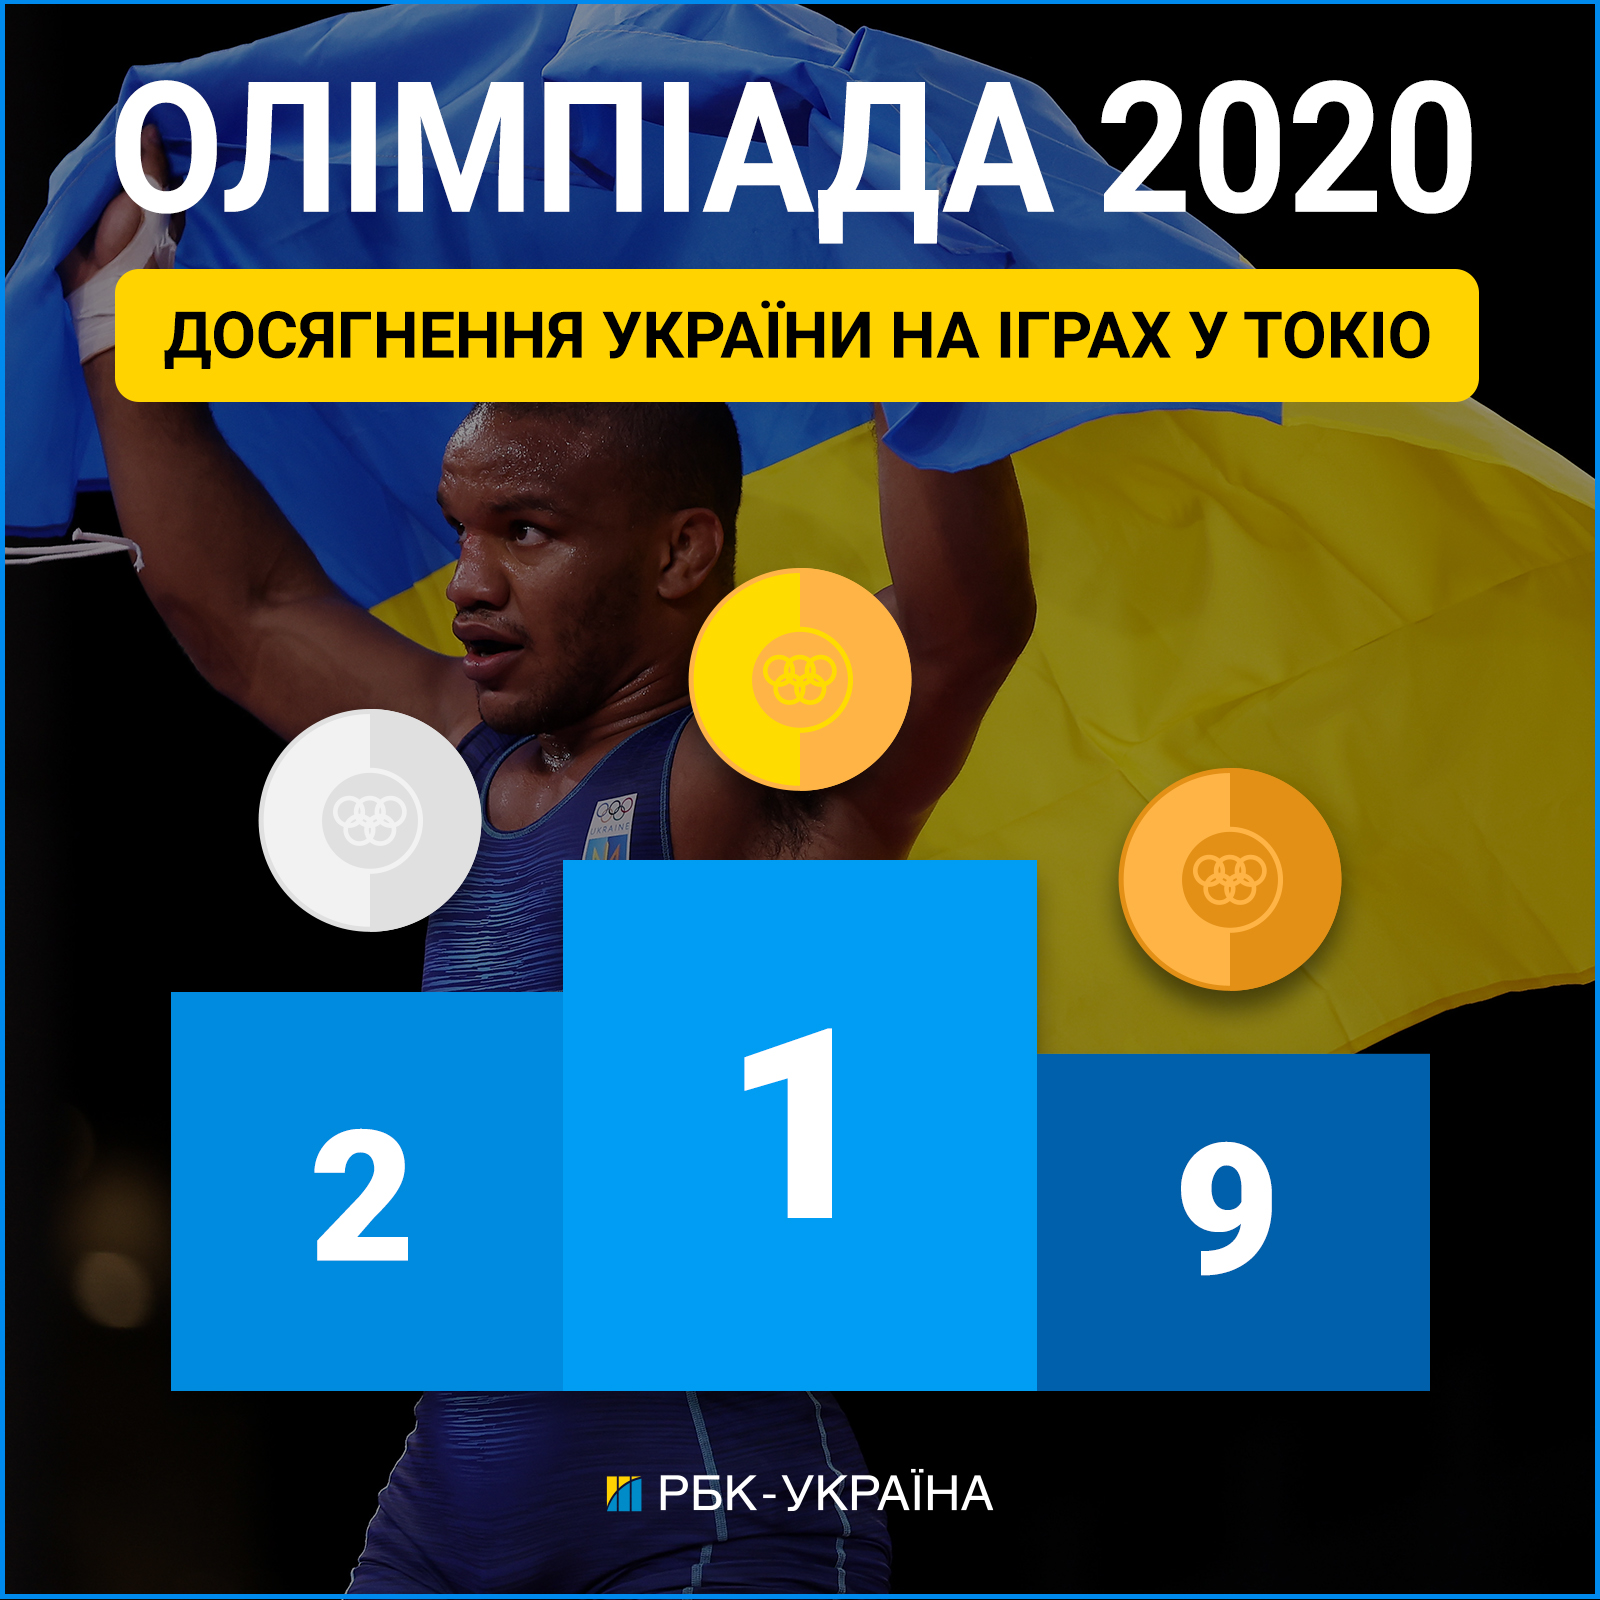 Медальний залік України на Олімпійський іграх в Токіо